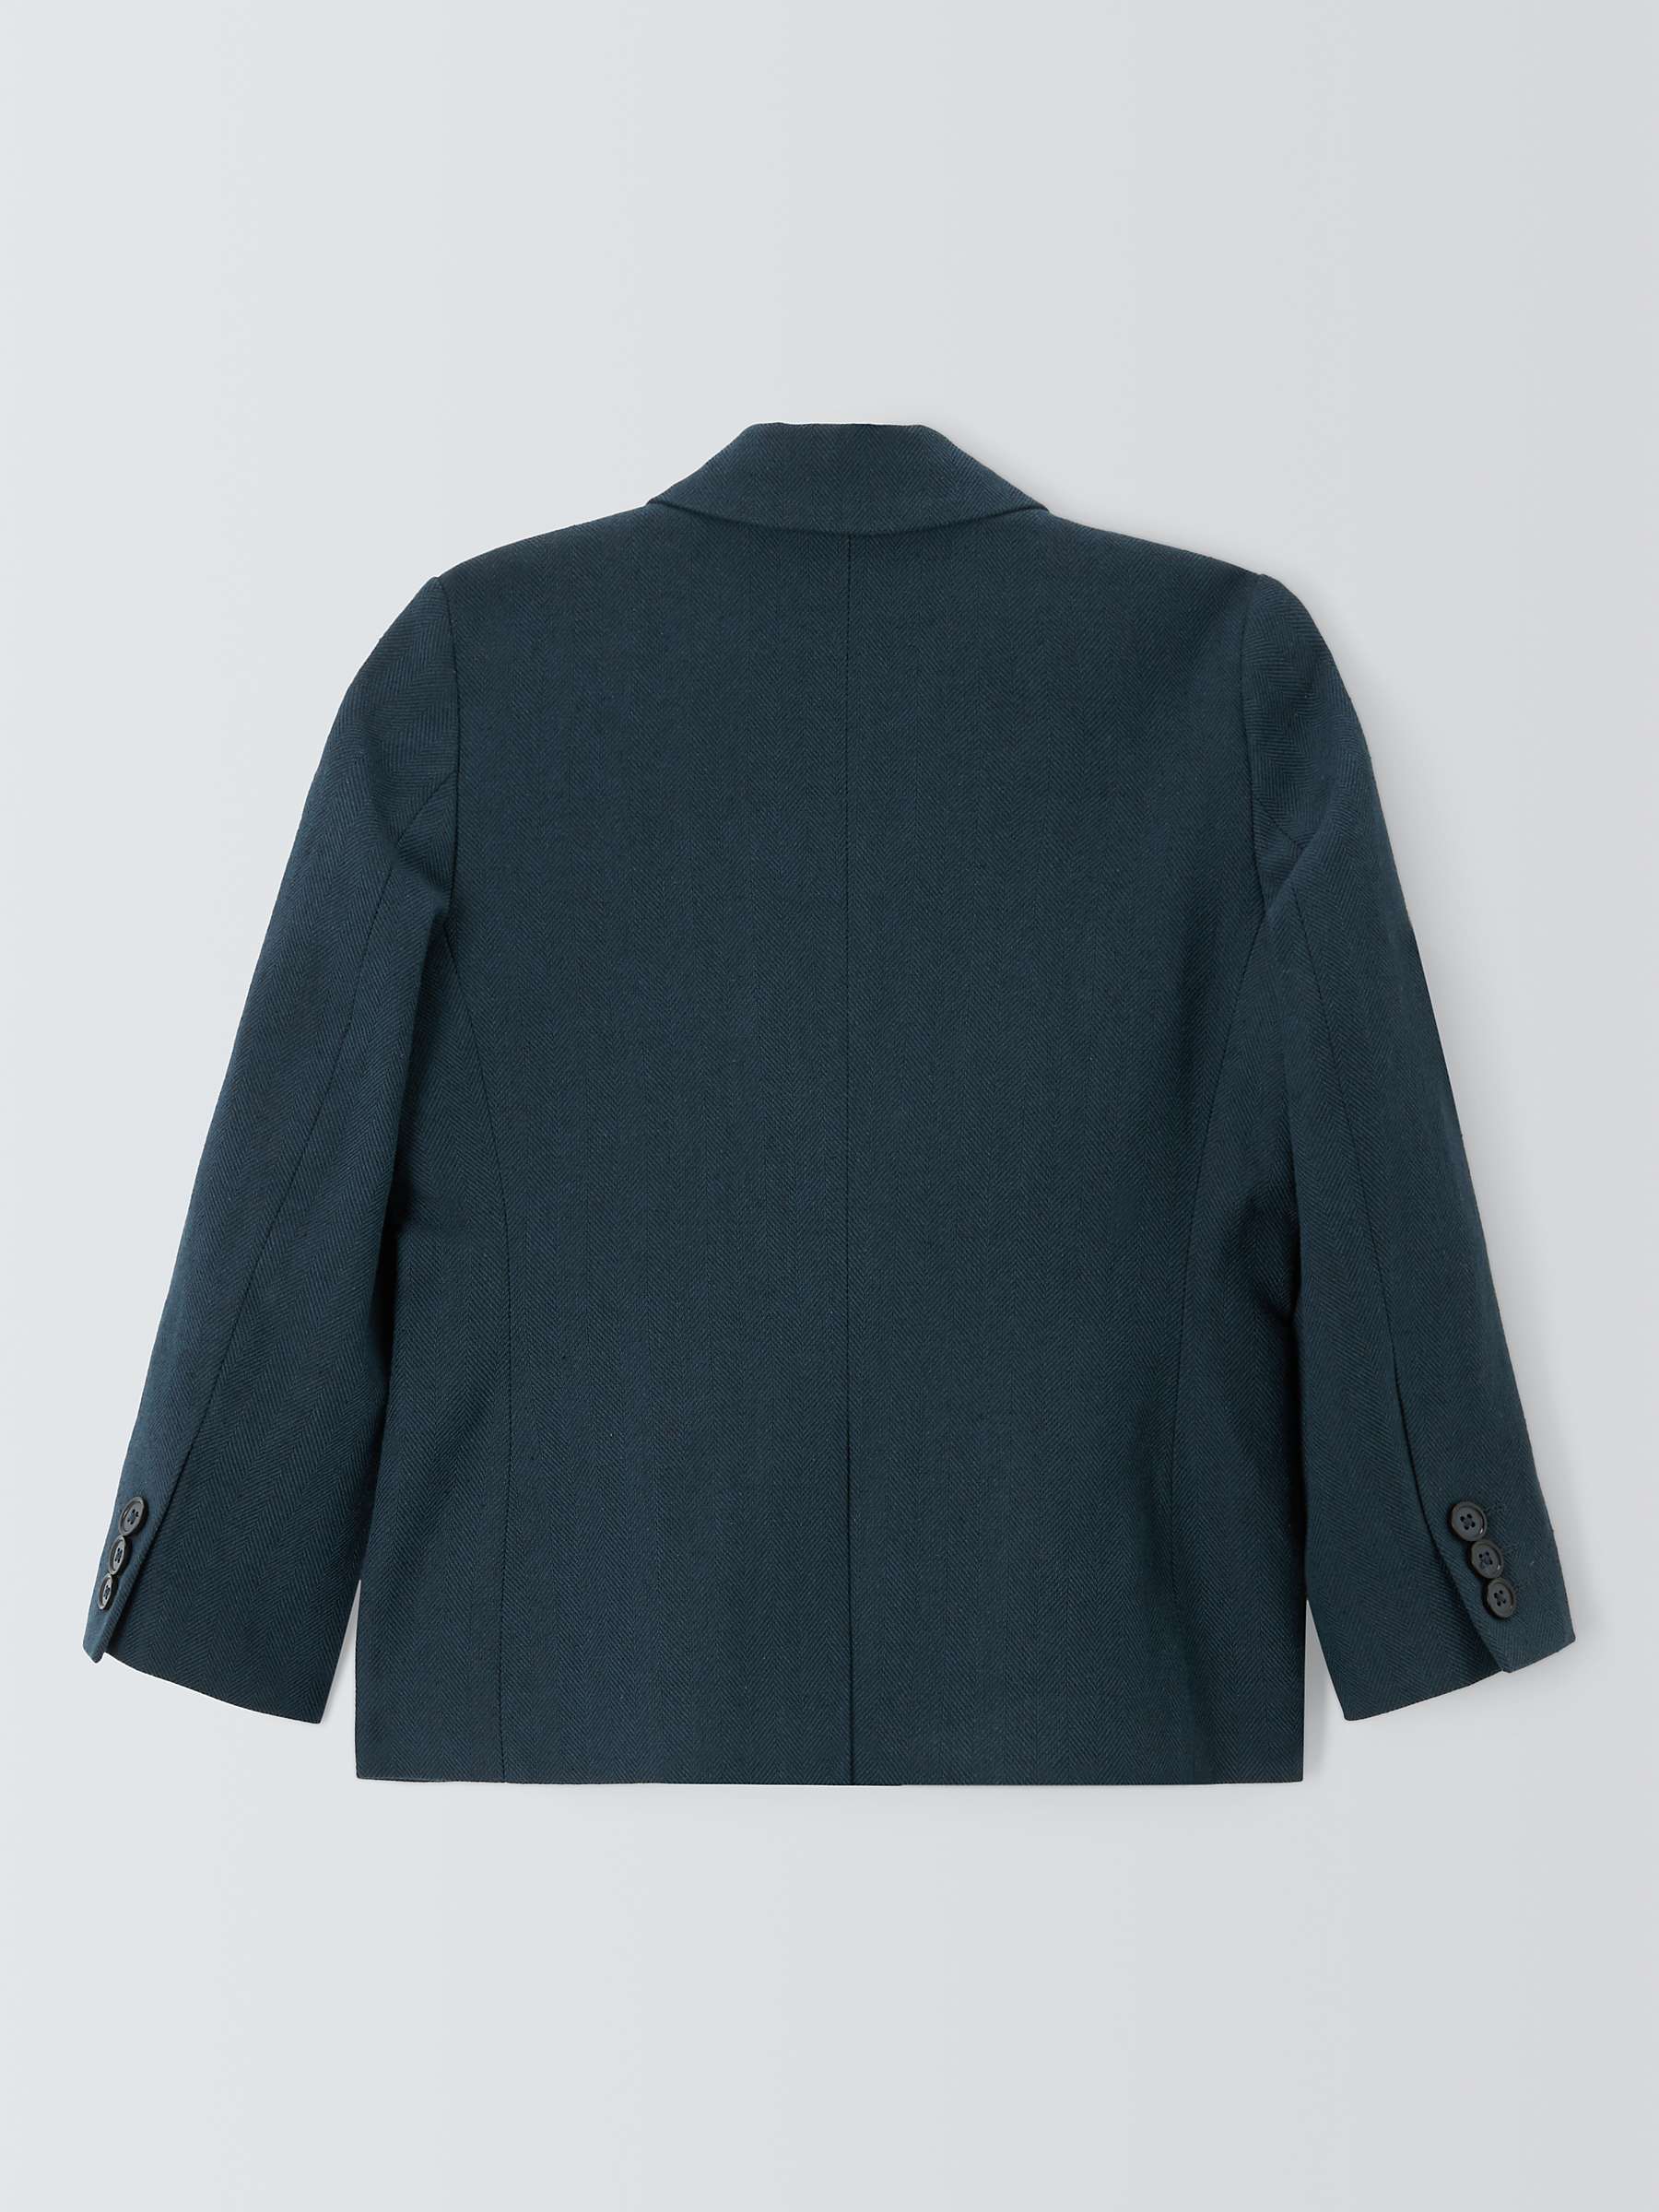 Buy John Lewis Heirloom Collection Kids' Linen Blend Suit Jacket Online at johnlewis.com